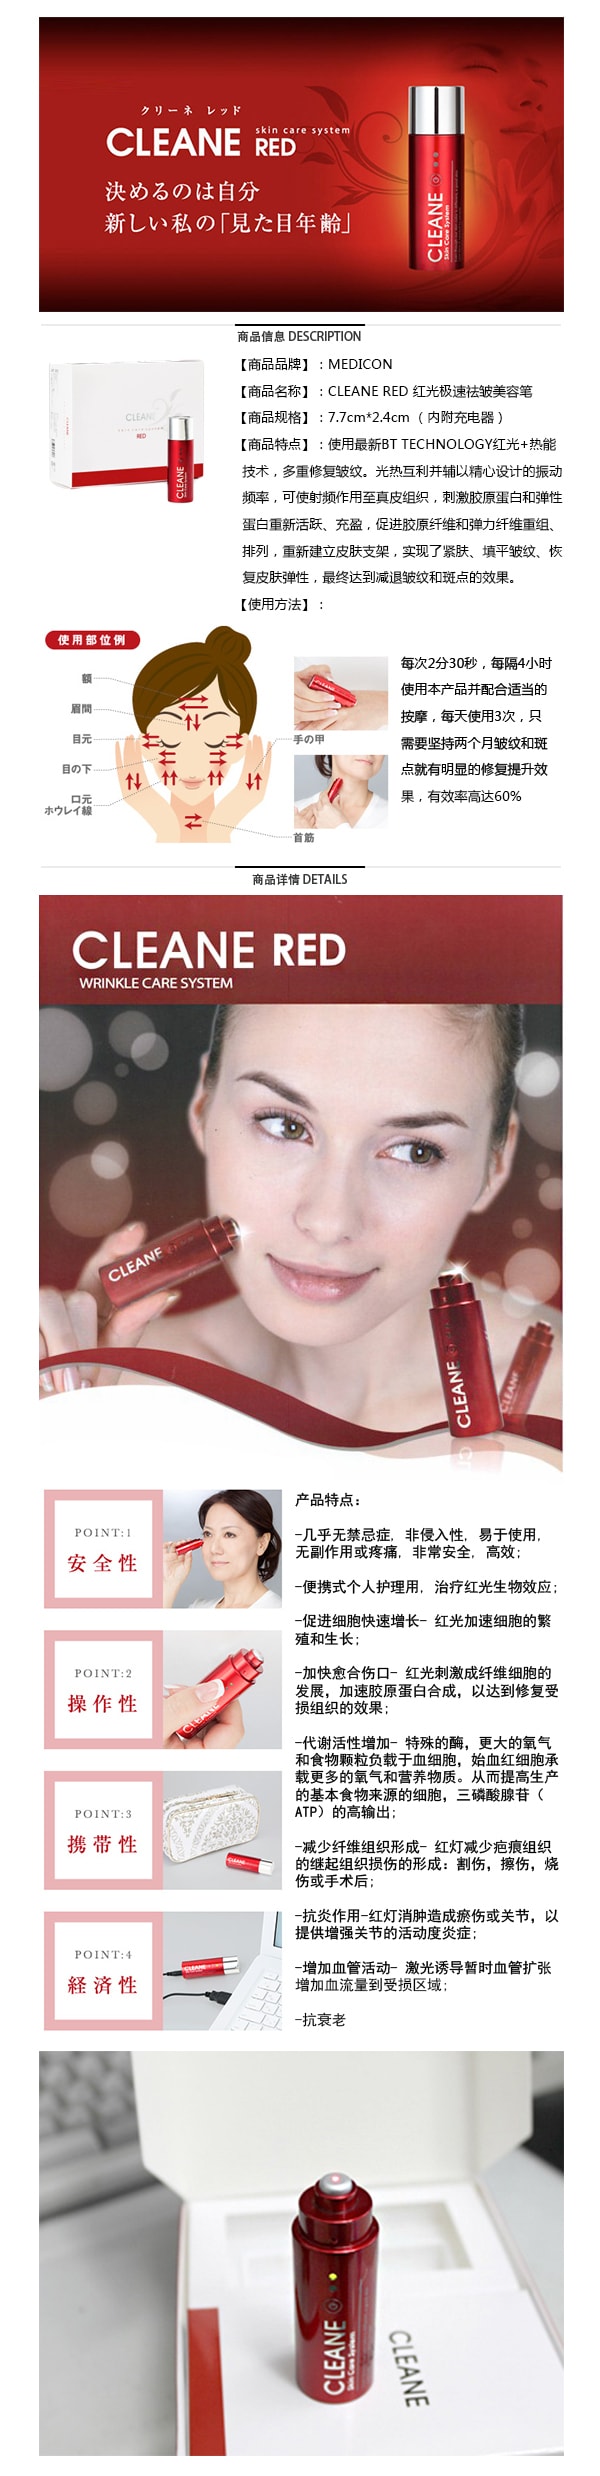 韩国GANGNAM SHOP MEDICON CLEANE RED 红光极速祛皱美容笔